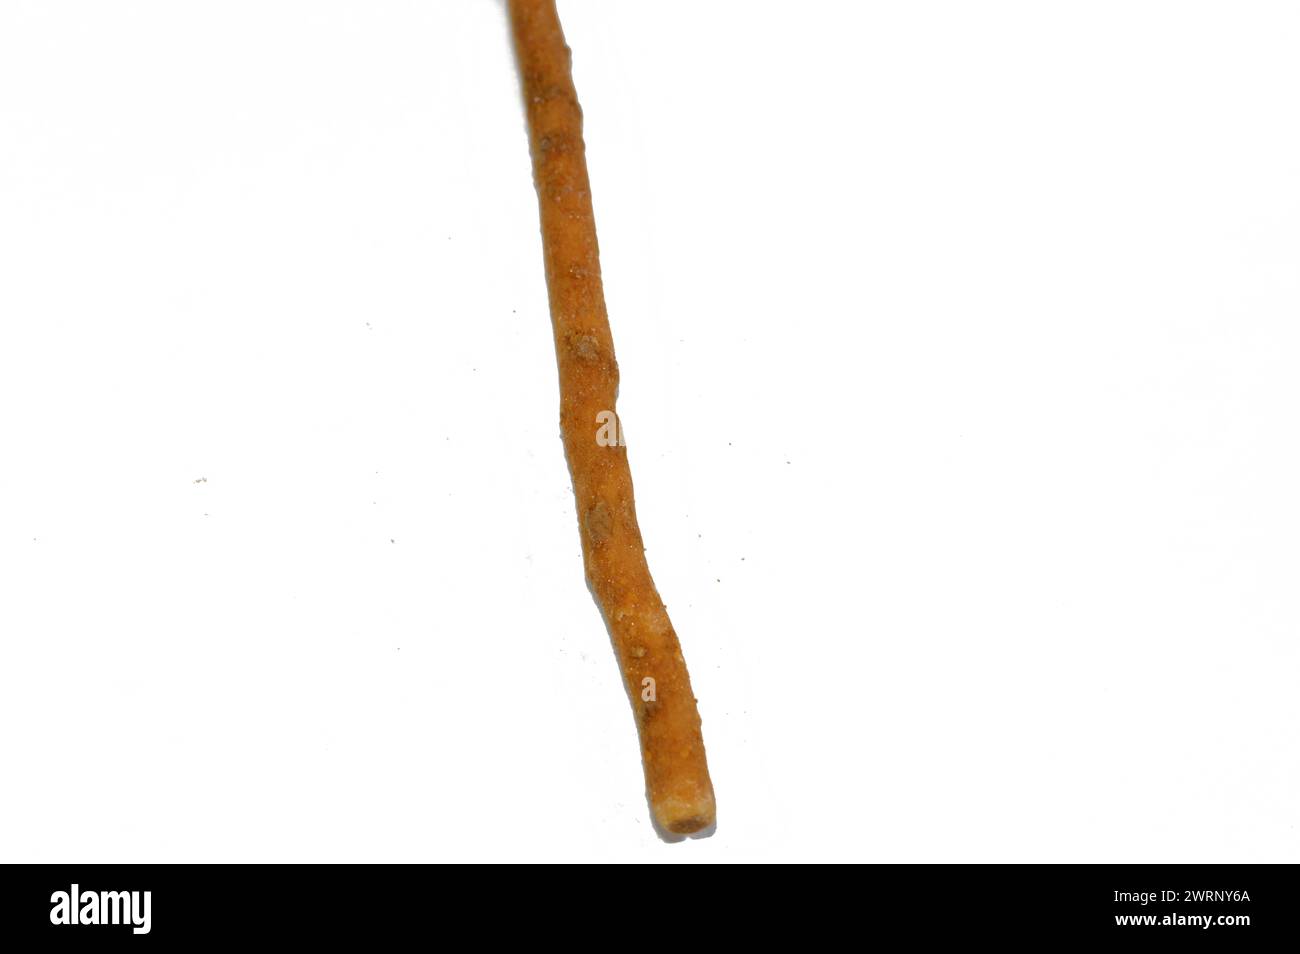 Der Miswak ist ein traditioneller Miswak-Stick, der aus dem Salvadora persica-Baum hergestellt wird und effektiv als natürliche Zahnbürste für Zähne verwendet wird Stockfoto